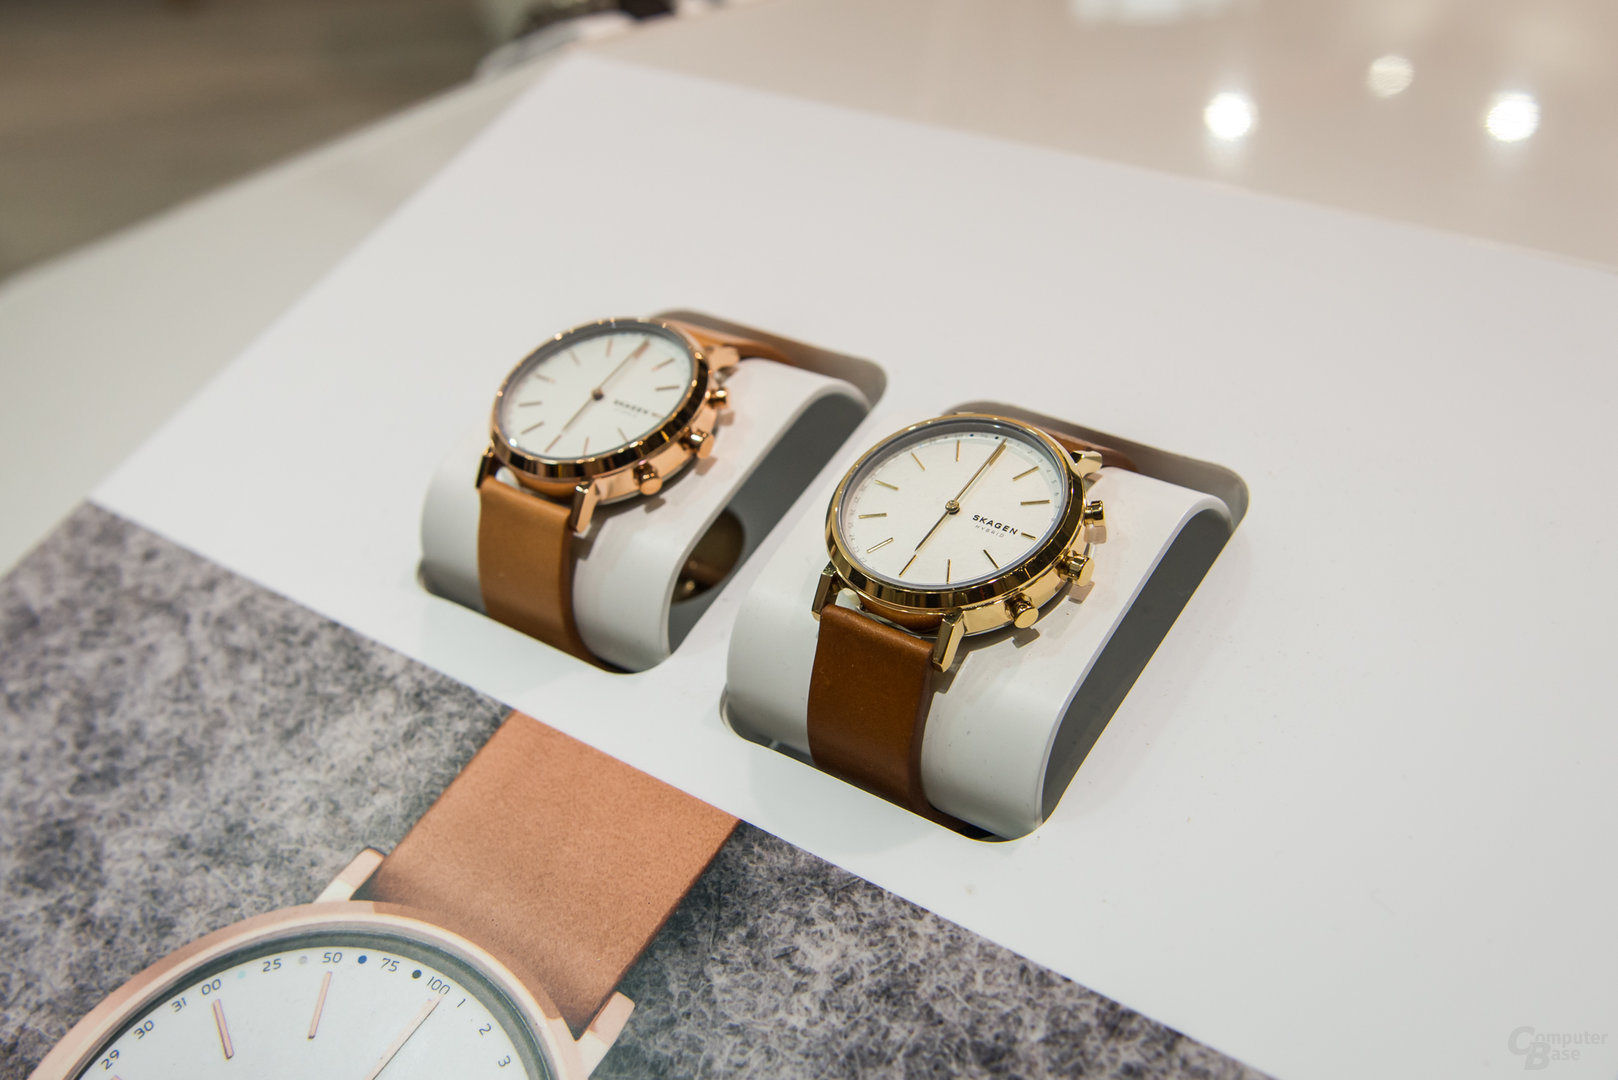 Hybride Smartwatches von Skagen